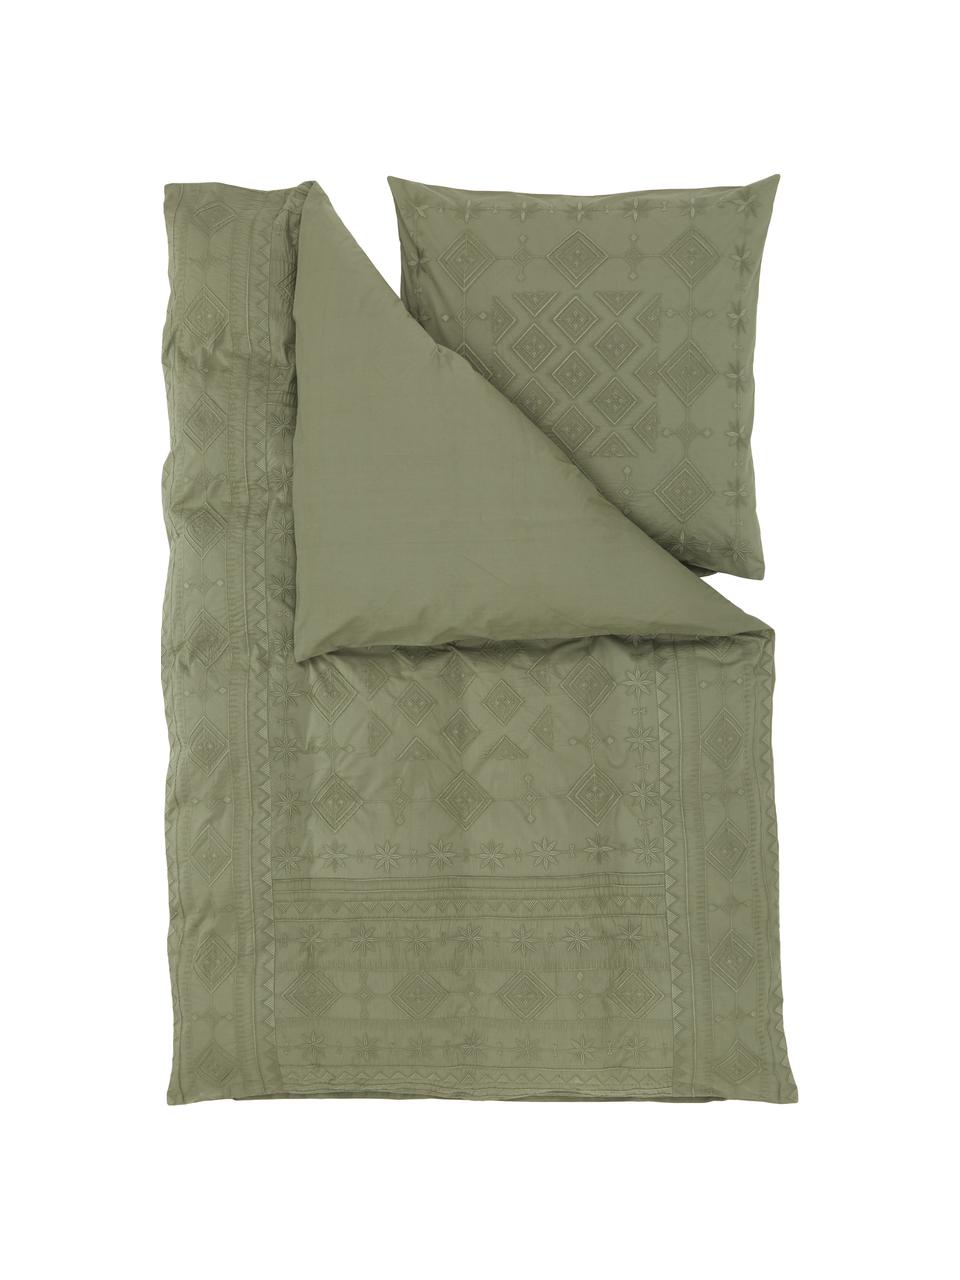 Vyšívaná bavlnená posteľná bielizeň Elaine, 100 % bavlna
Hustota vlákna 140 TC, kvalita štandard

Posteľná bielizeň z bavlny je príjemná na dotyk, dobre absorbuje vlhkosť a je vhodná pre alergikov, Zelená, 135 x 200 cm + 1 vankúš 80 x 80 cm